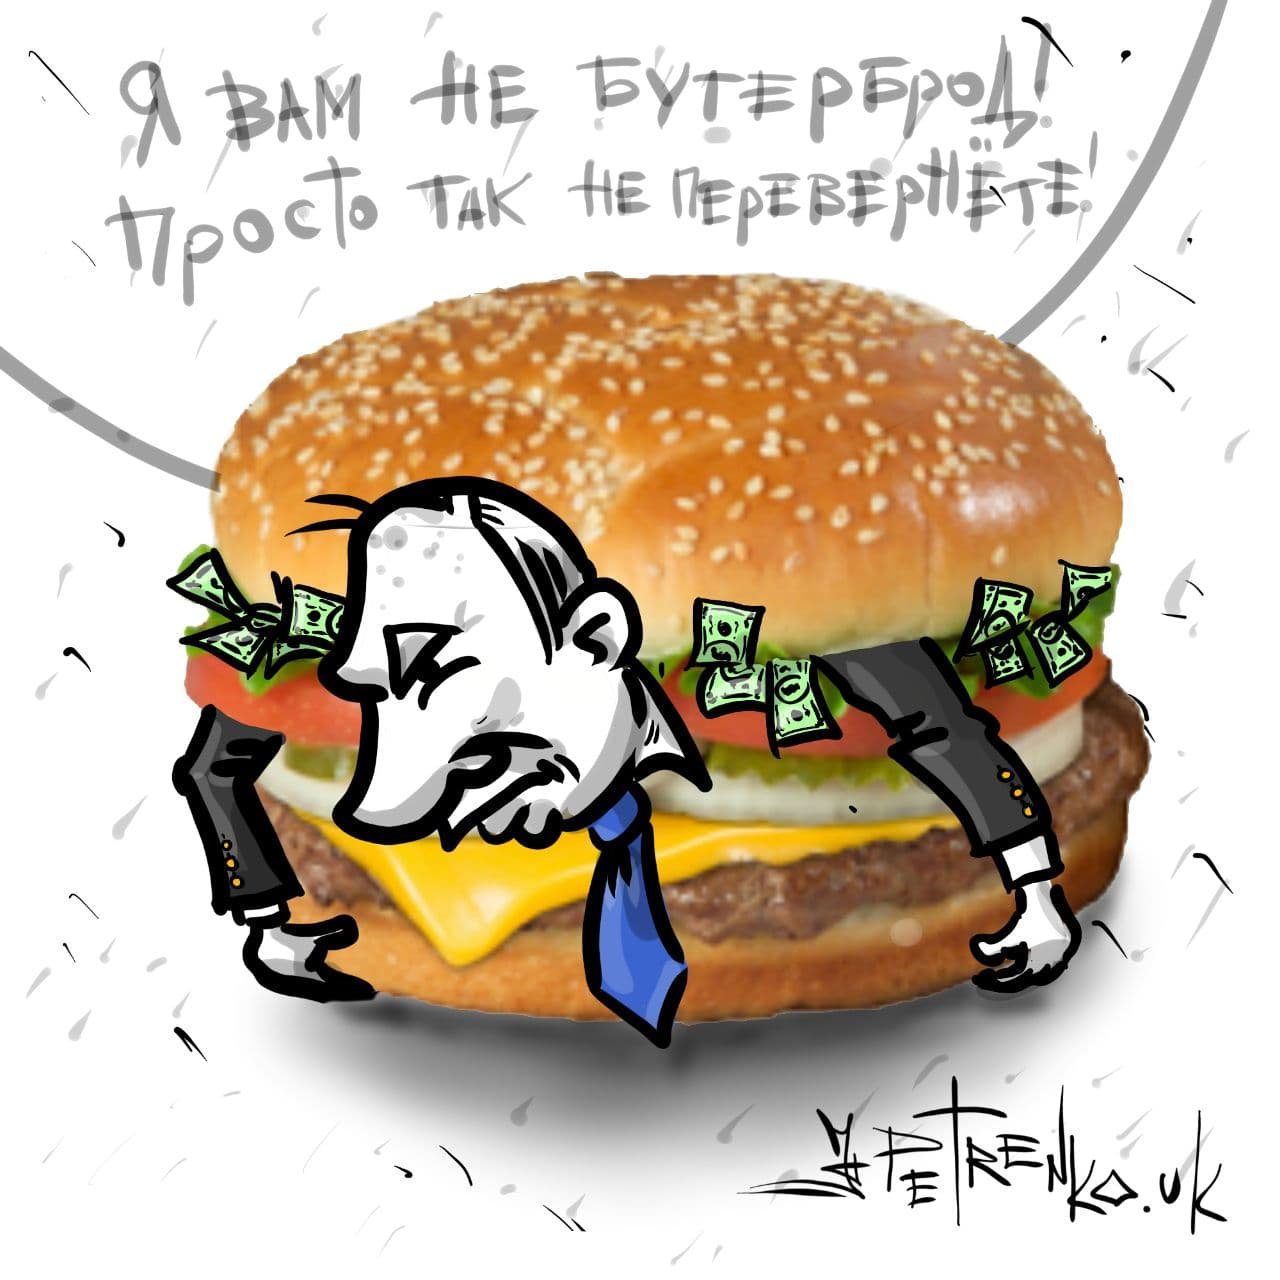 \"Я вам не бутерброд\": Путин попал на меткую карикатуру из-за масштабных протестов в России. ФОТО